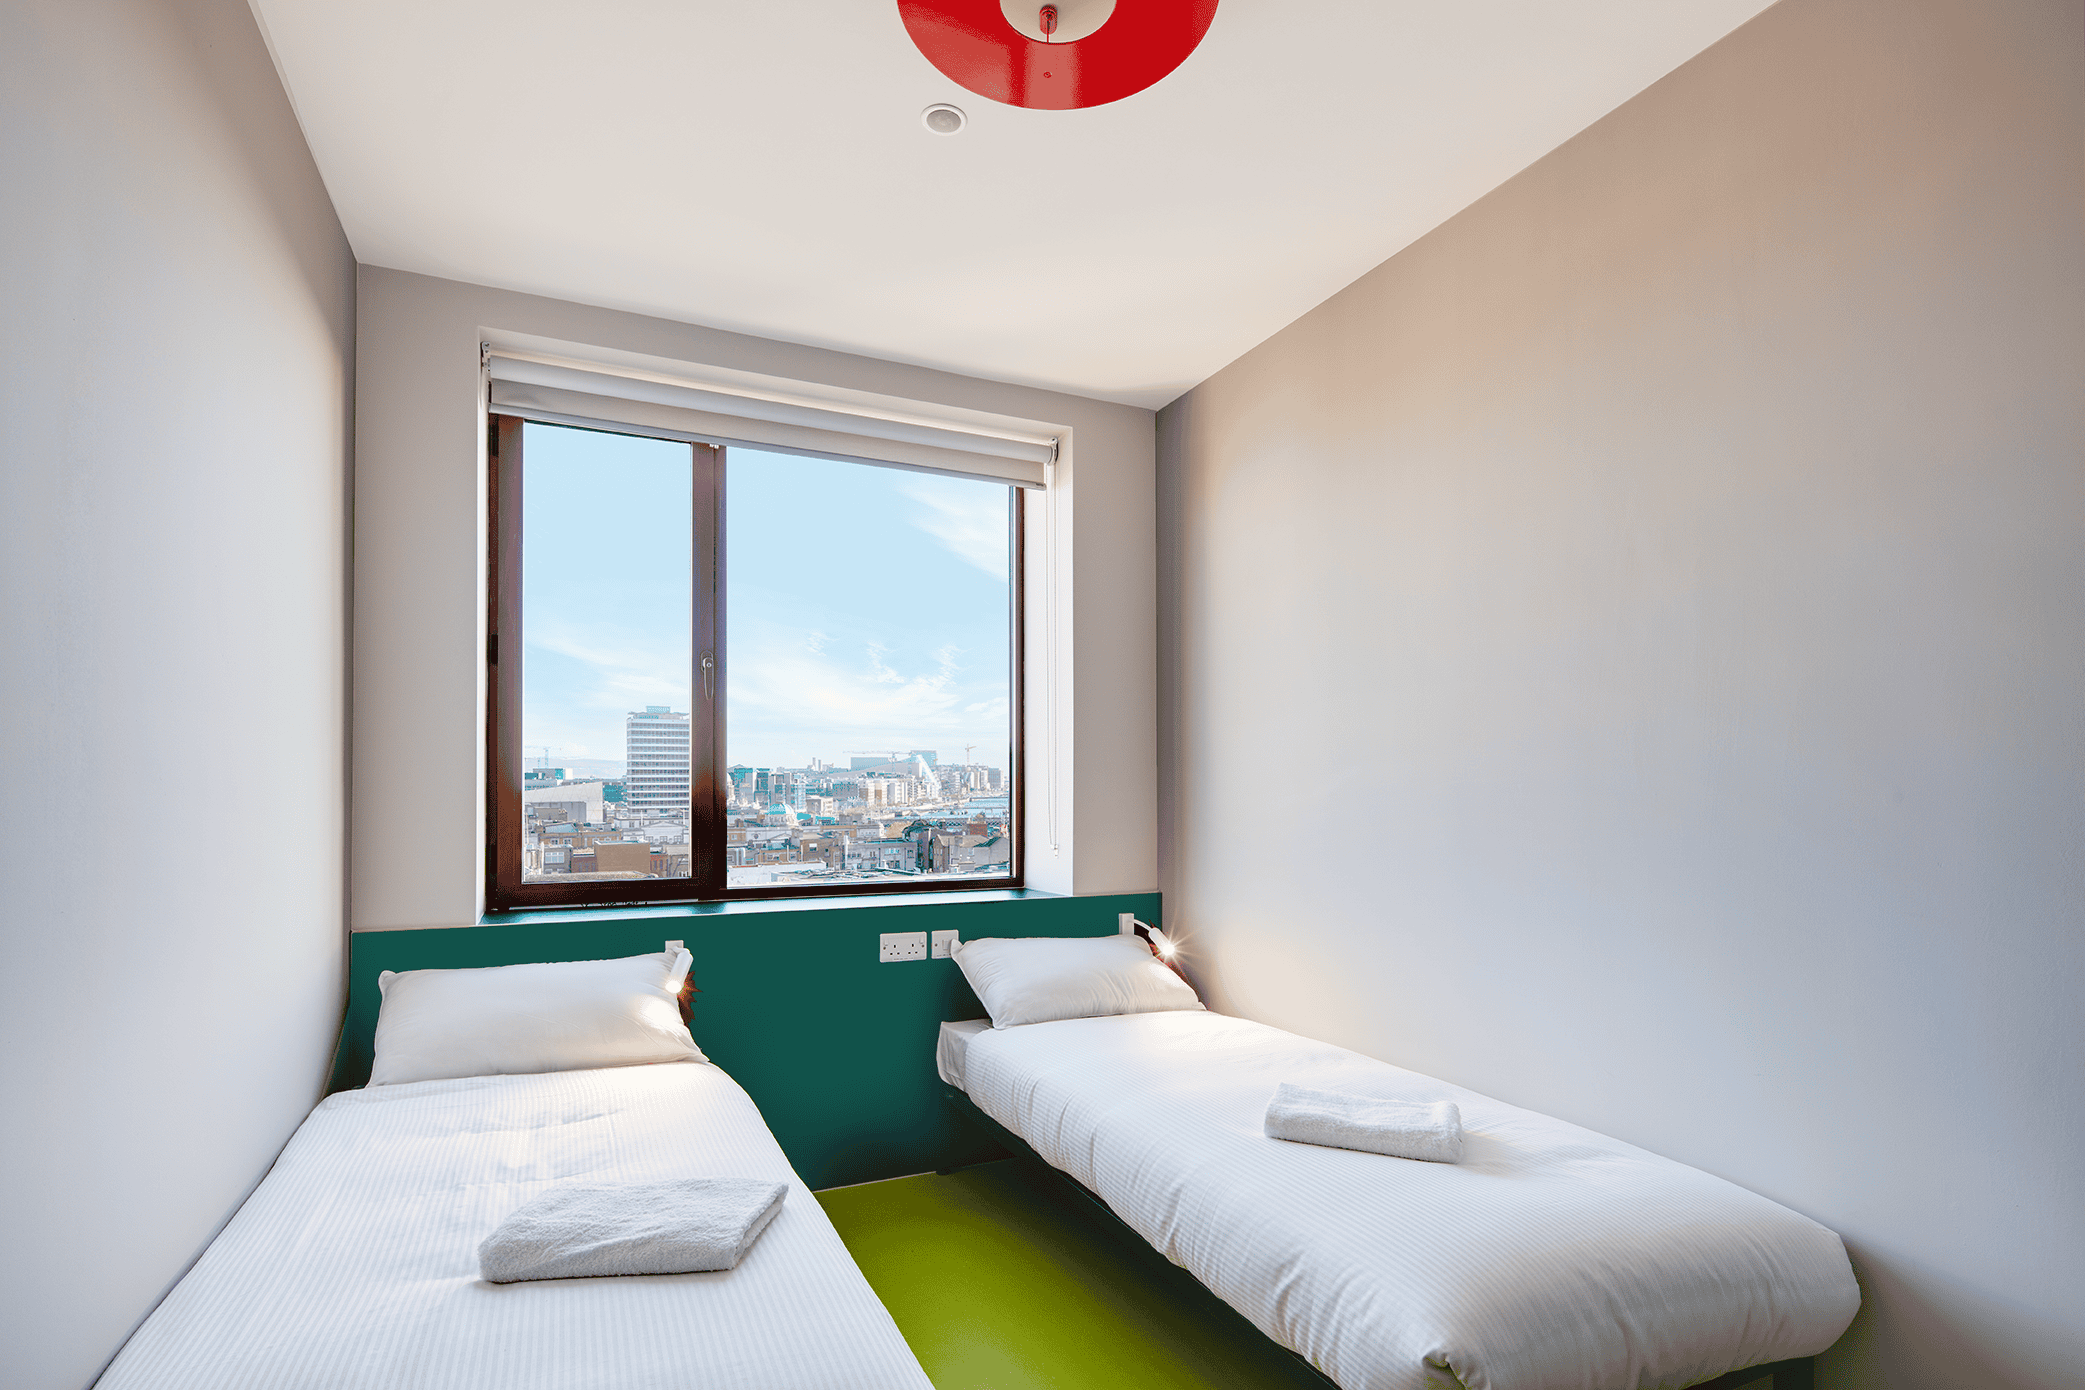 Clink i Lár habitación privada con dos camas en el albergue de Dublín